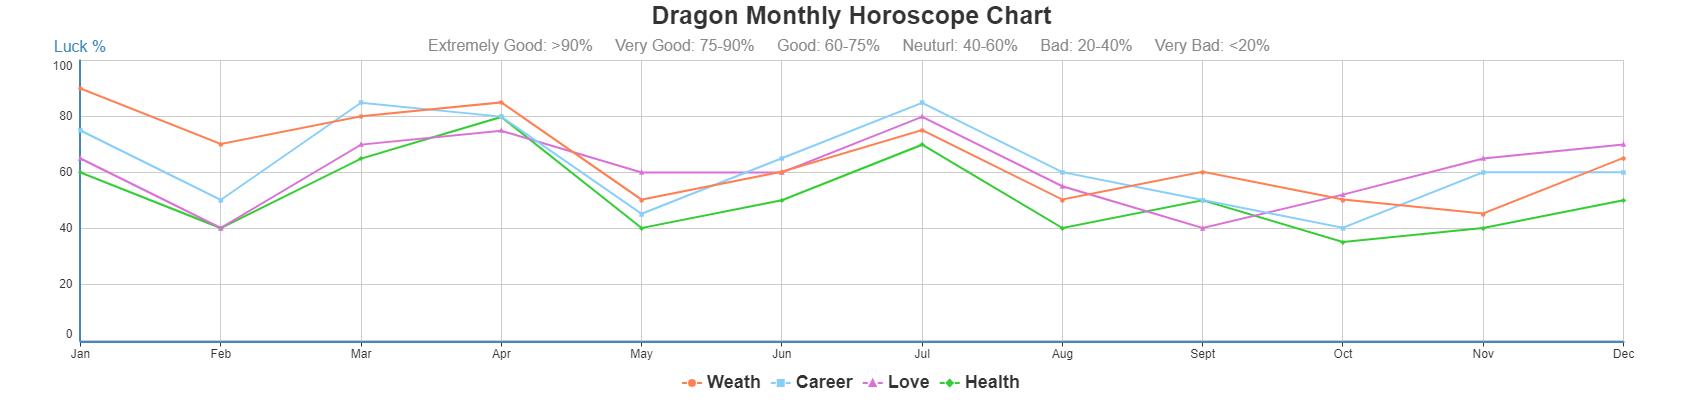 Dragon Daily Horoscope 2019